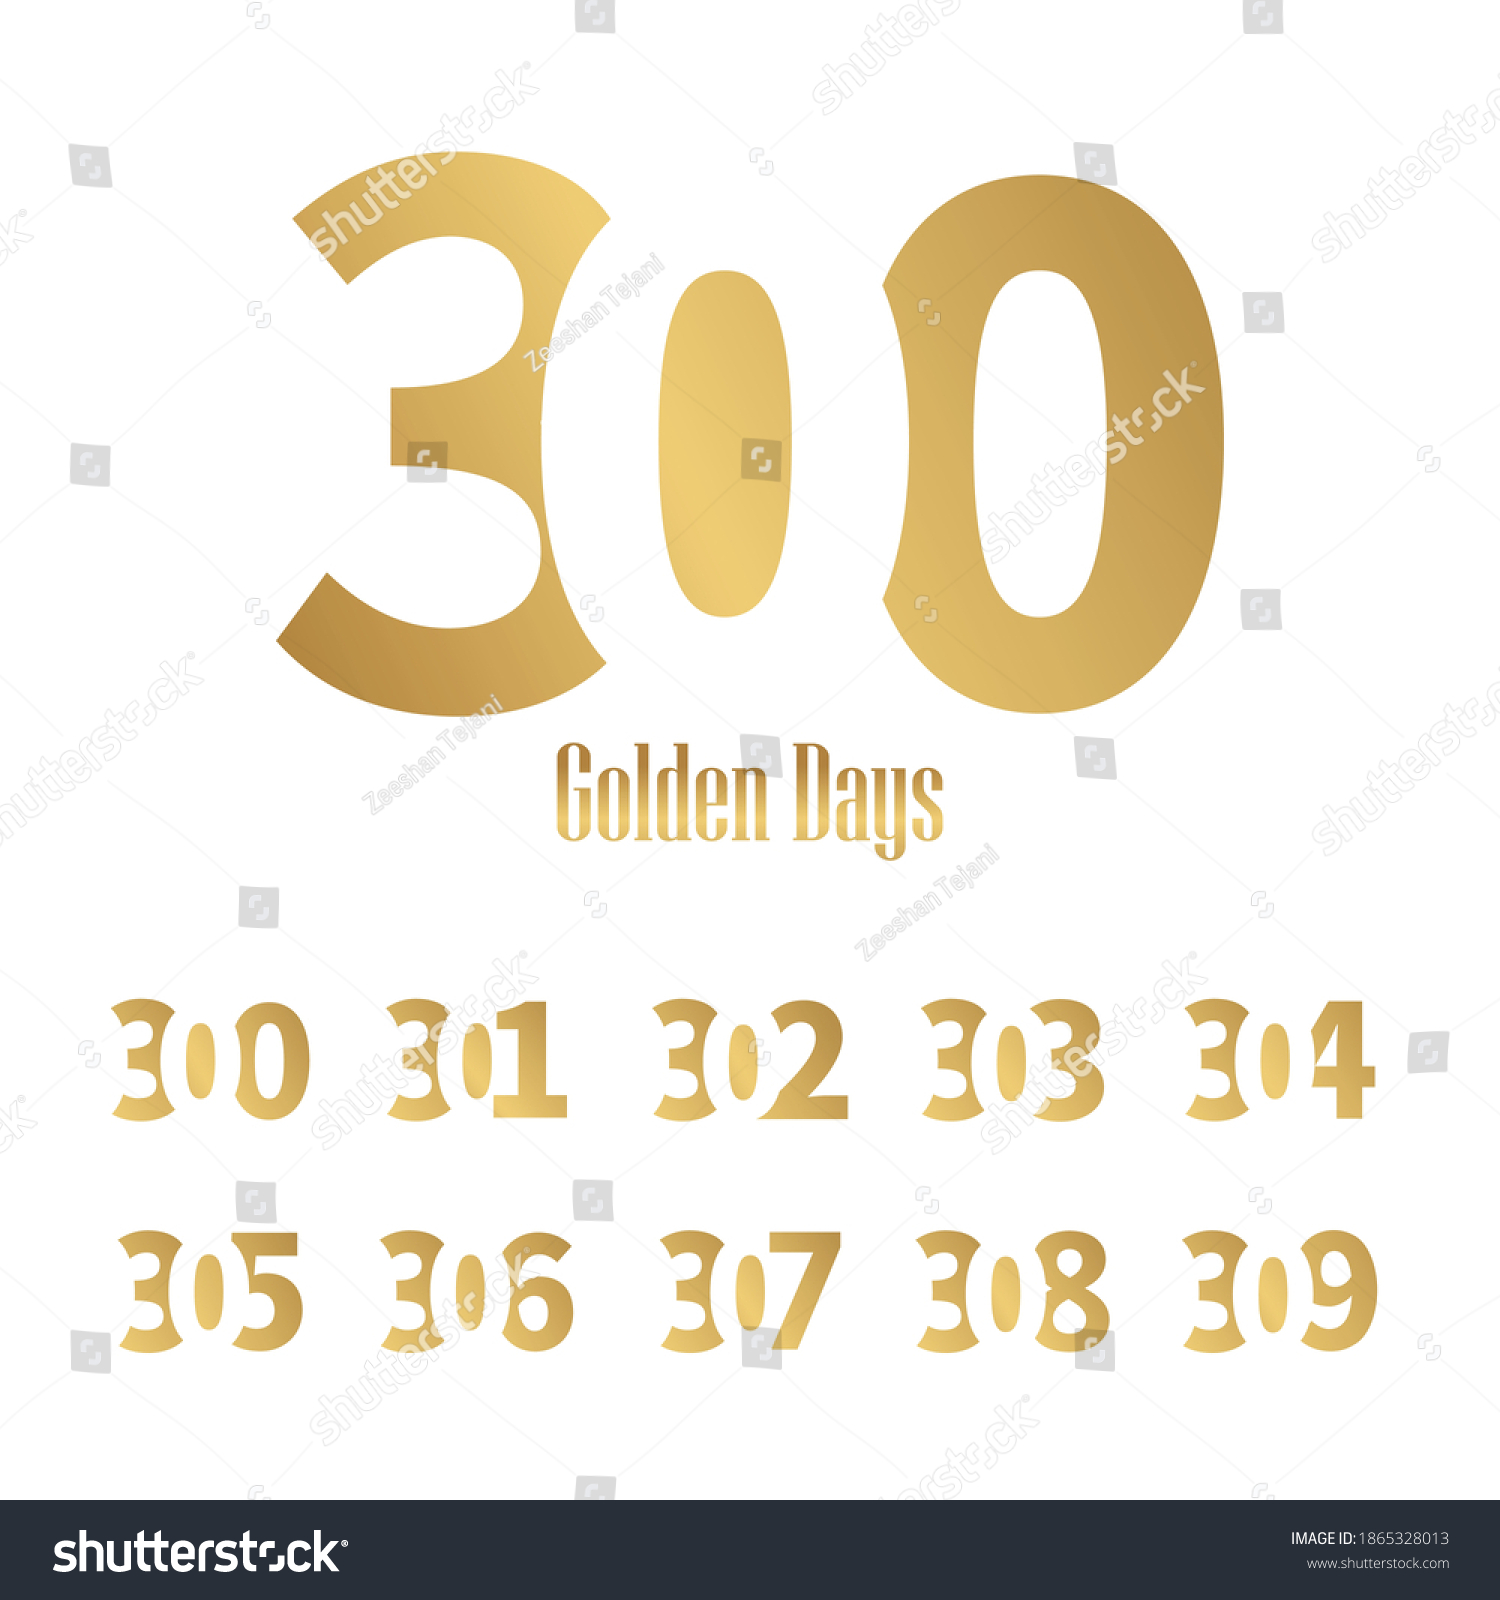 SVG of 300 lettertype vector logo design, 300 golden days 301 302 303 304 305 306 307 308 309 svg